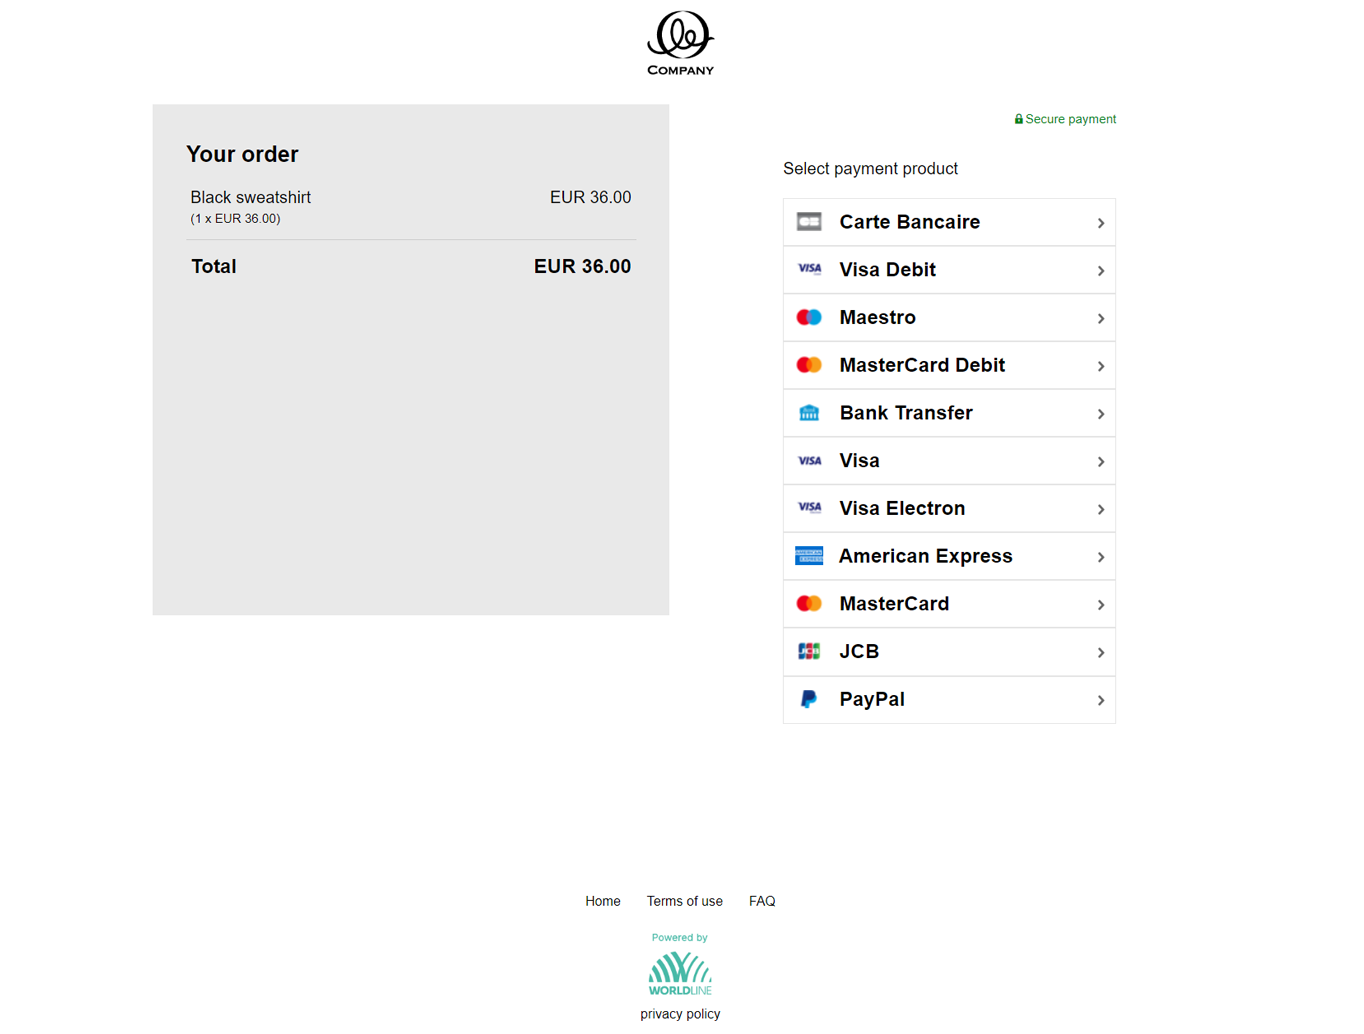 Cartes-Bancaires-desktop-consumer-experience-start-checkout-screen